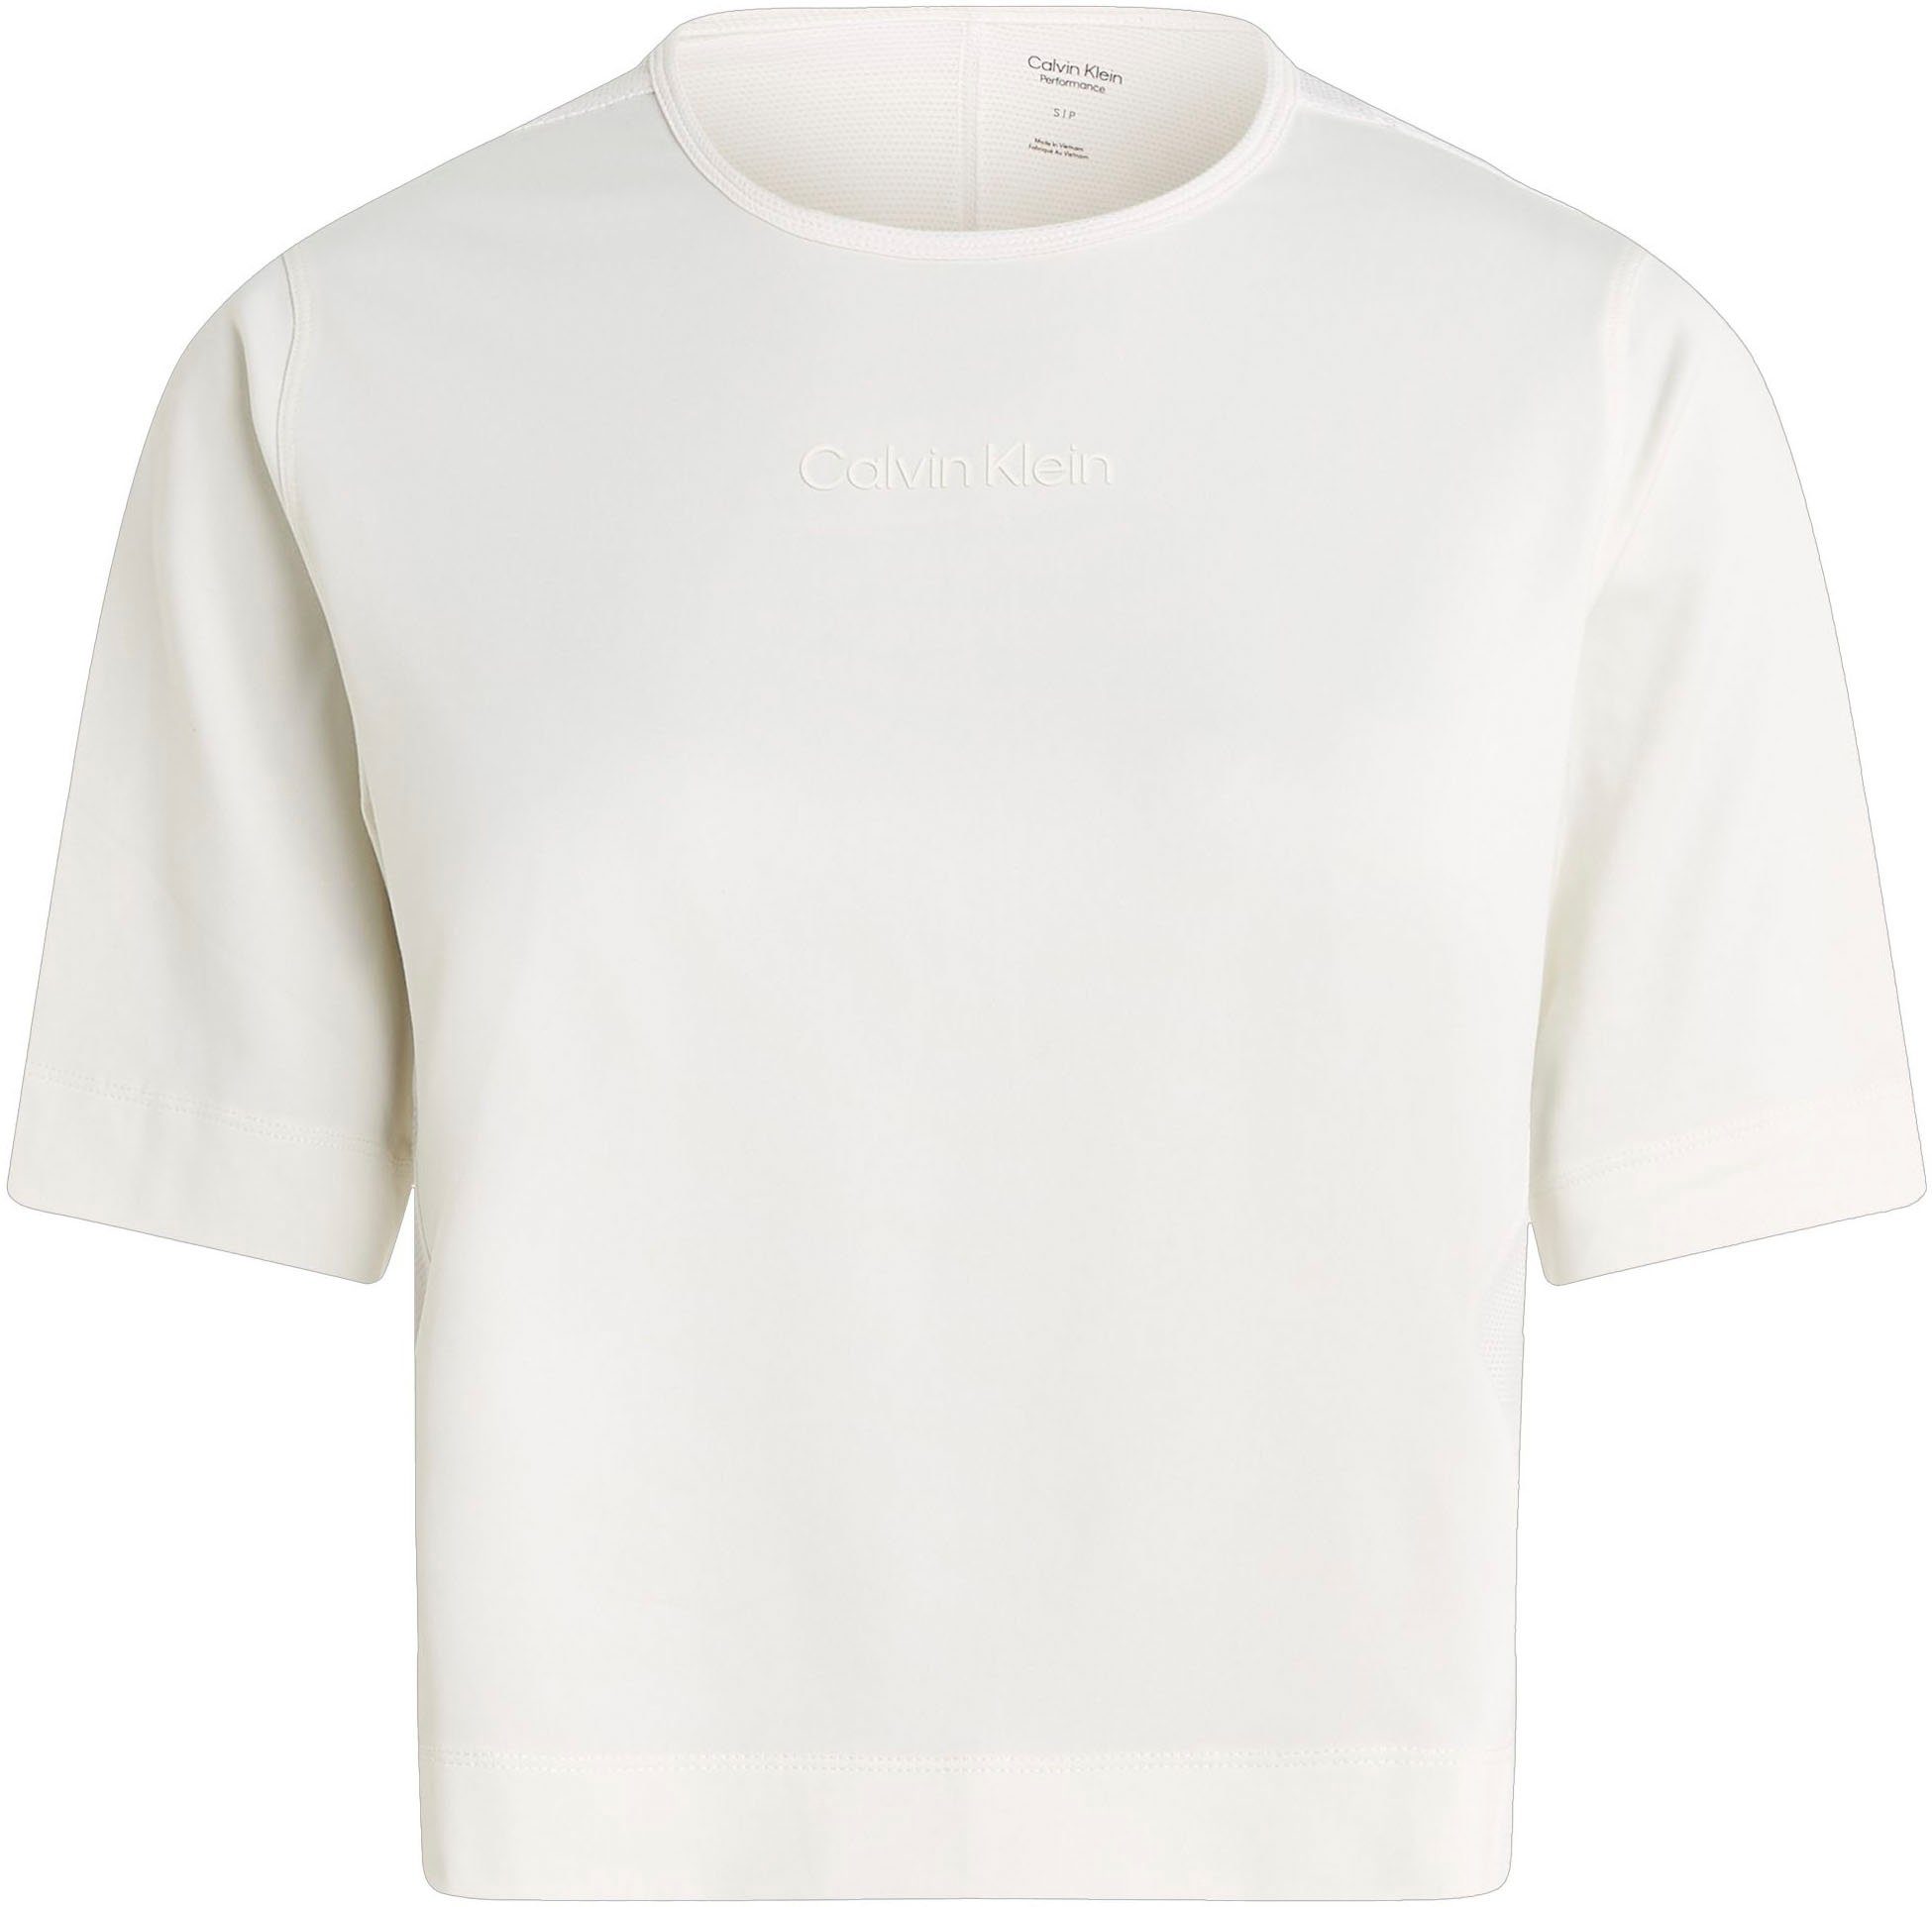 Calvin T-Shirt White Sport Suede Klein